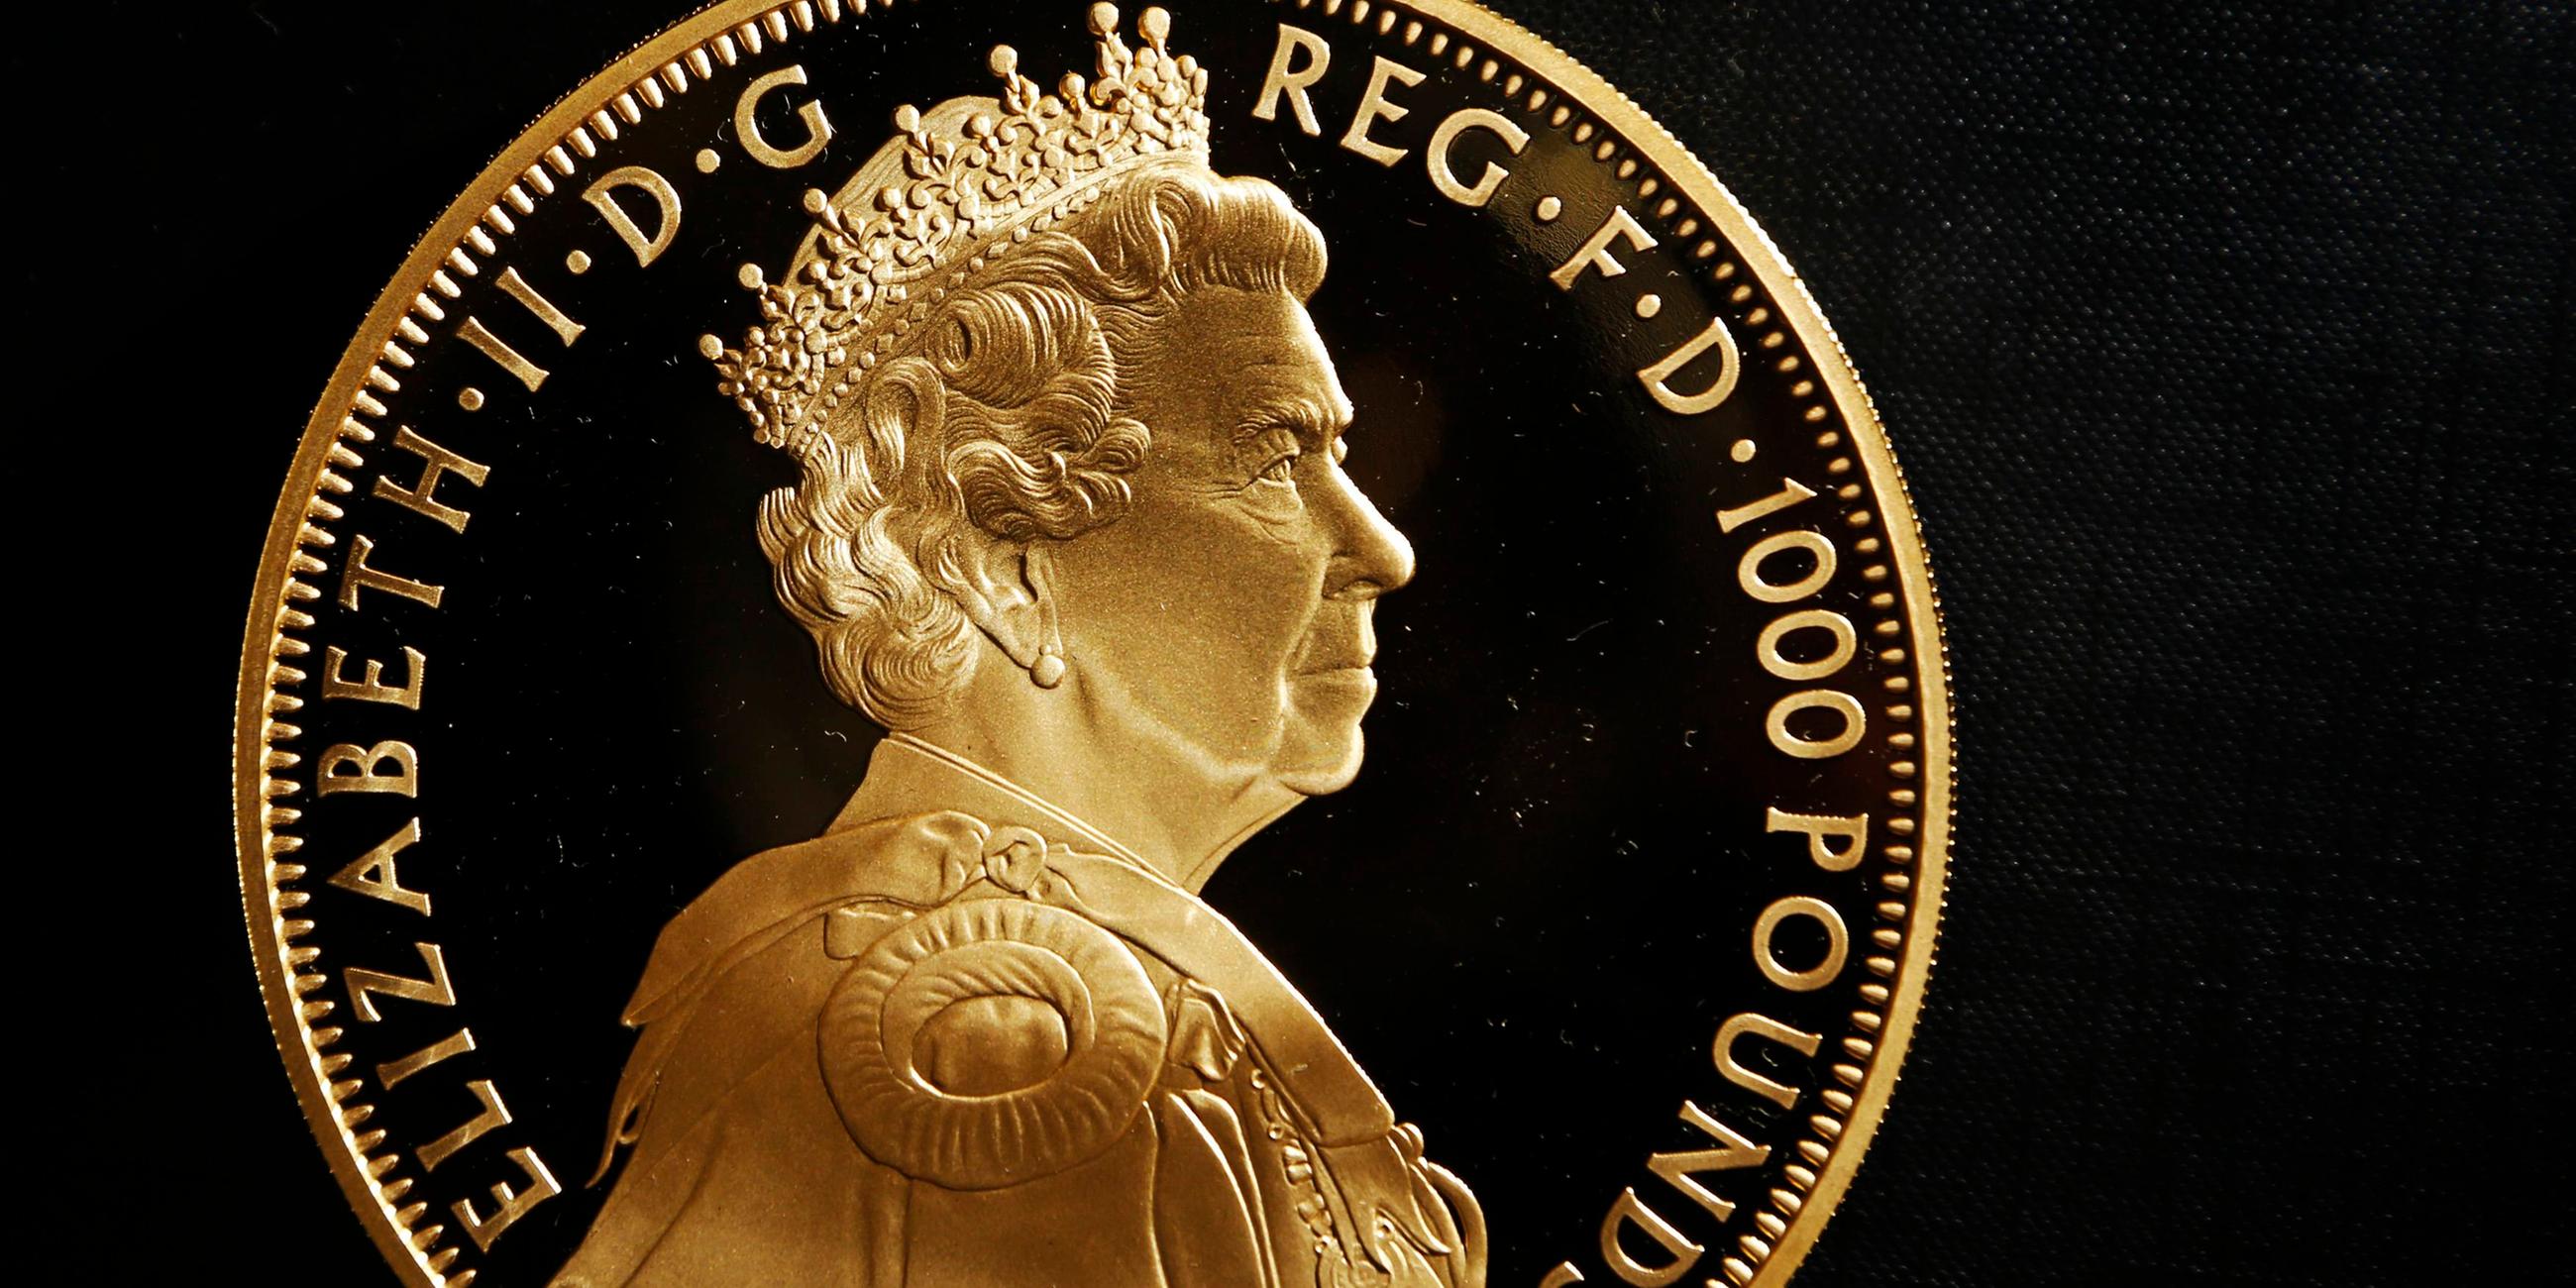 Das Bild zeigt eine goldene Münze, die dem diamantenen Thronjubiläum Queen Elizabeths II gewidmet ist.